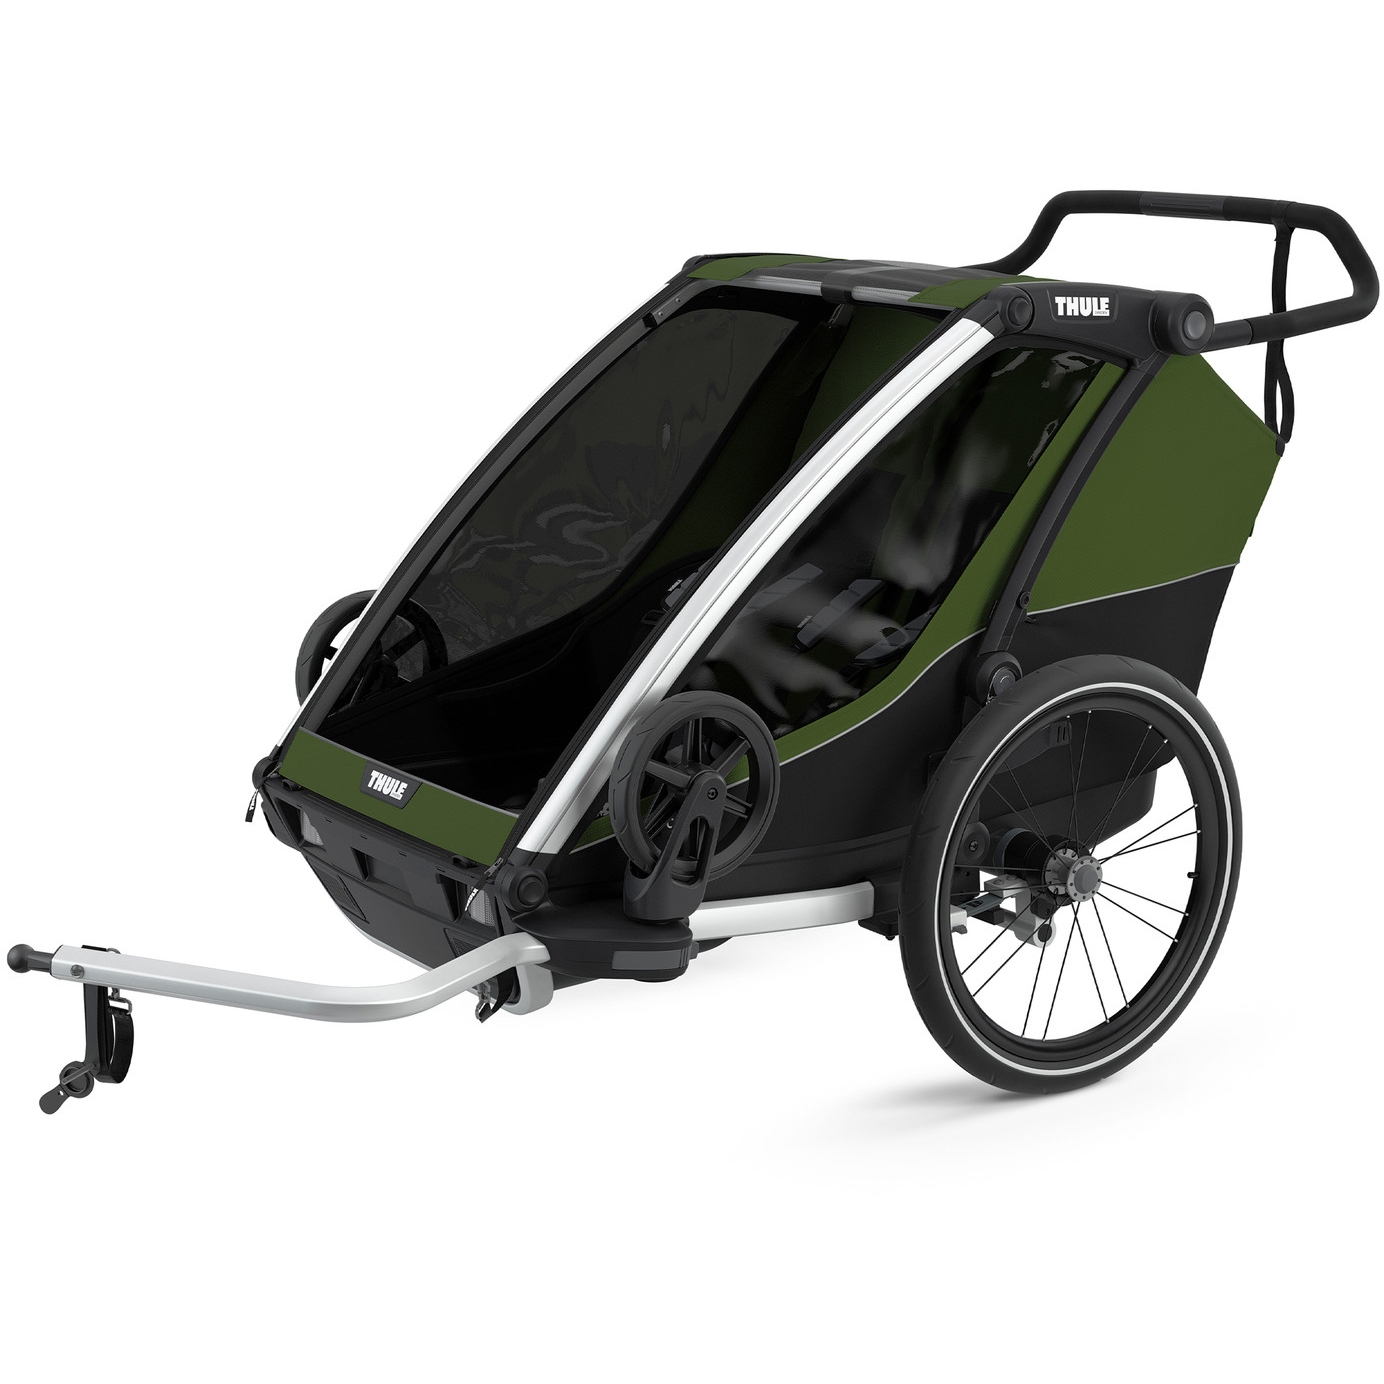 Produktbild von Thule Chariot Cab 2 - Fahrradanhänger für 2 Kinder - cypress grün